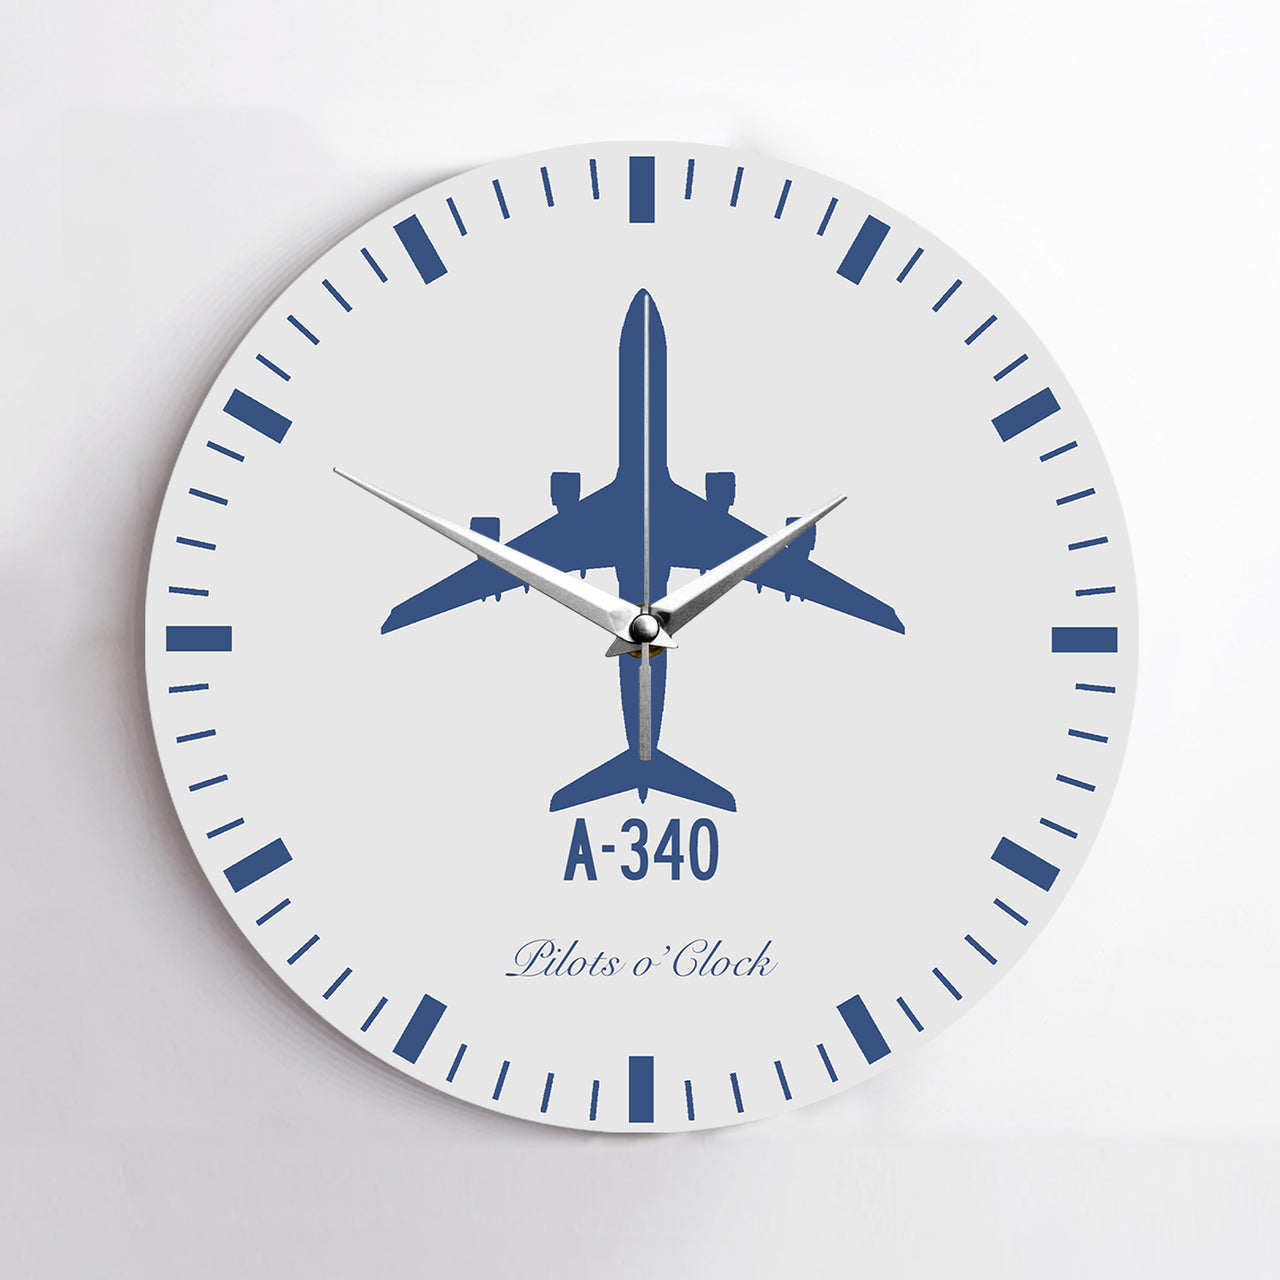 Airbus A340 Printed Wall Clocks